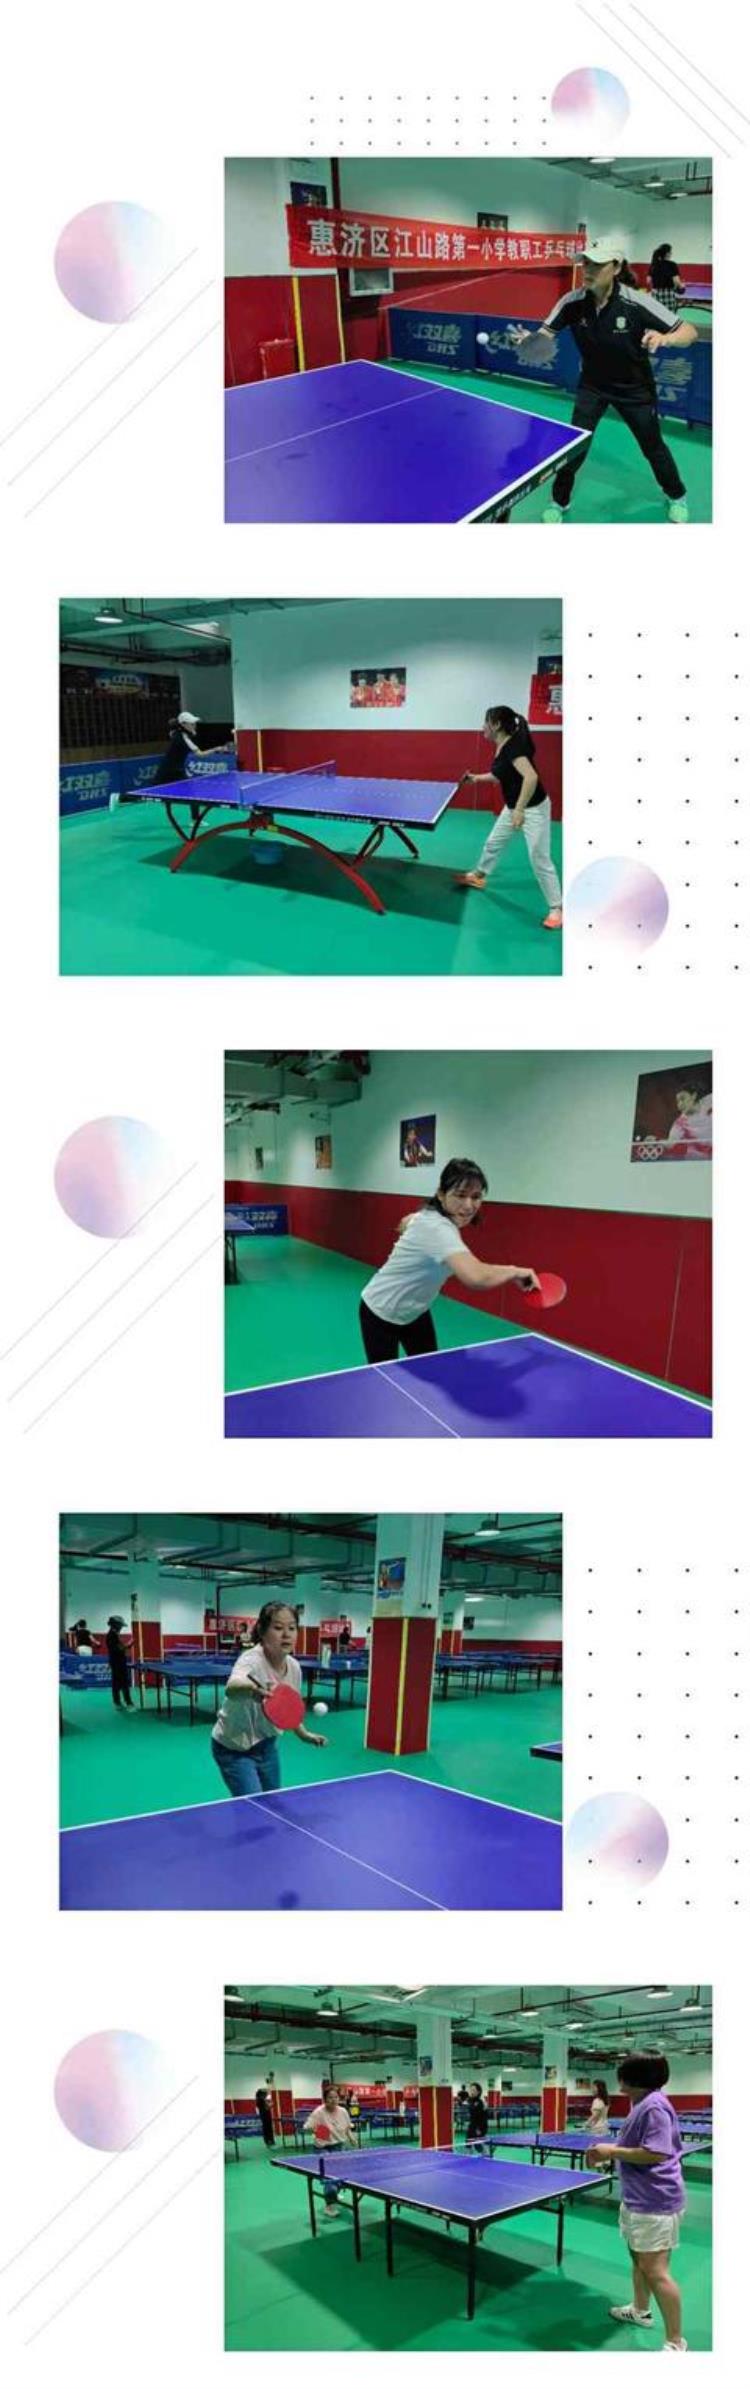 济南市中小学生乒乓球联赛「郑州市惠济区江山路第一小学举行教职工乒乓球比赛活动」